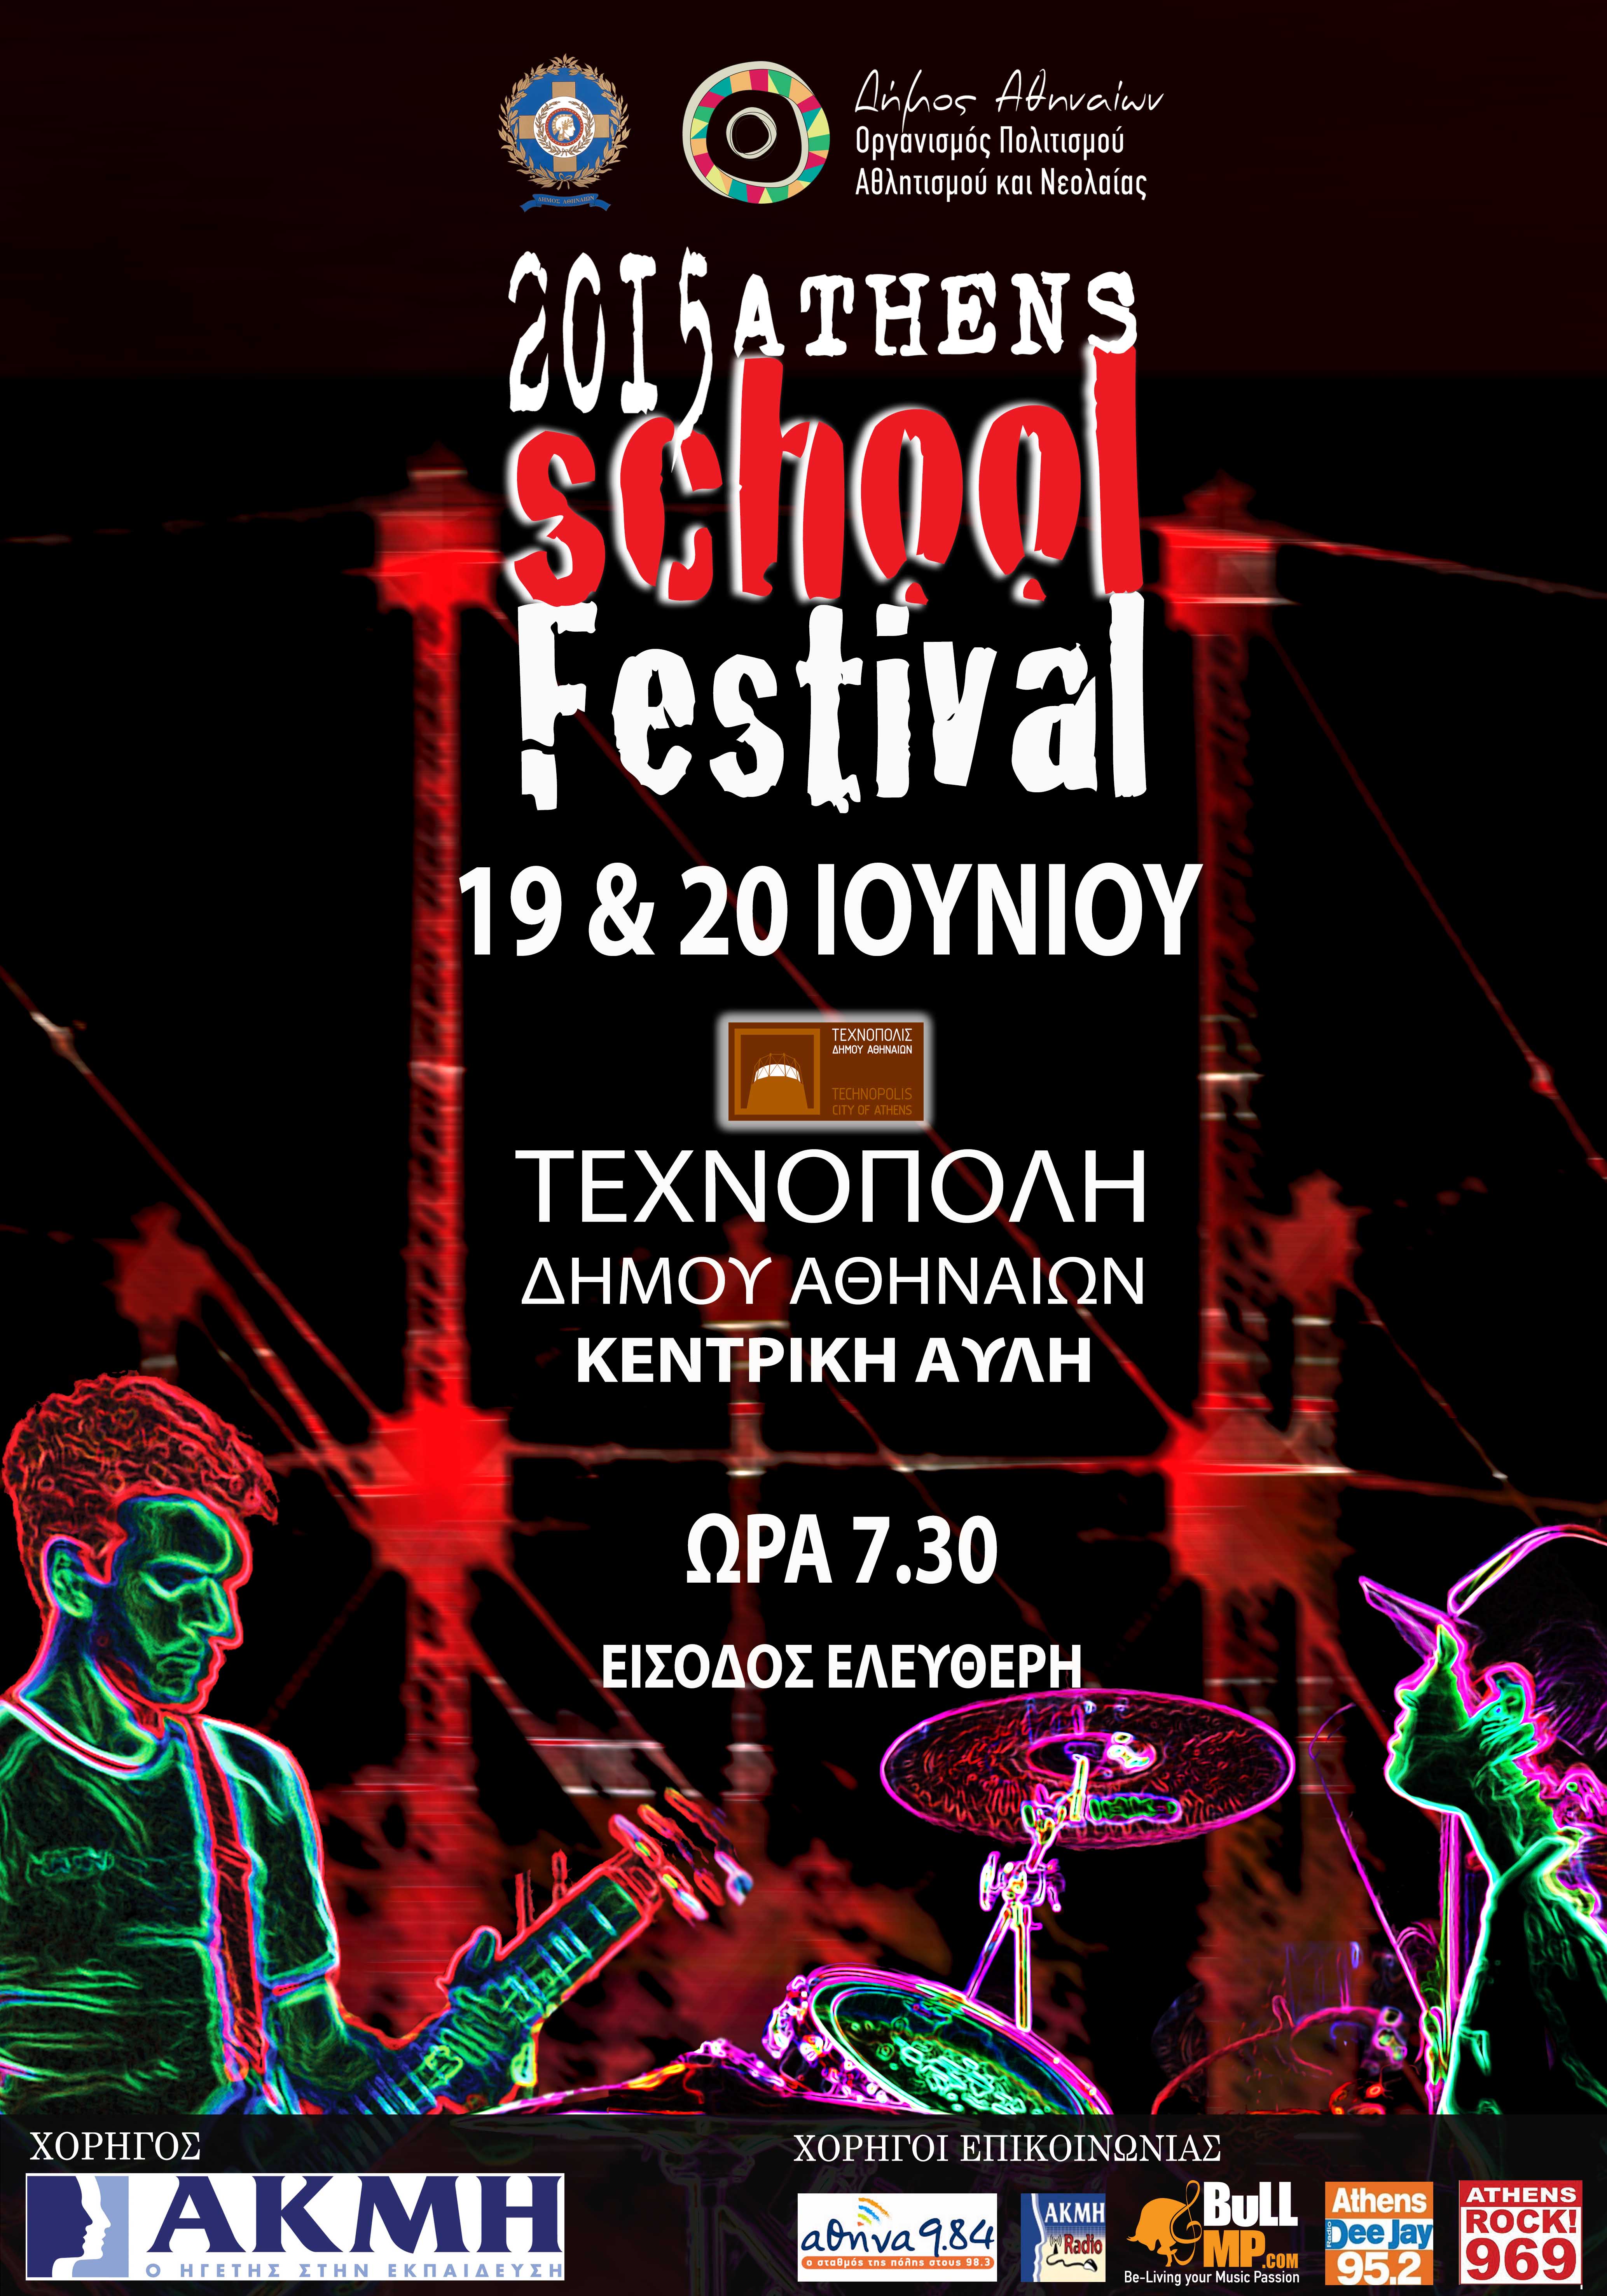 Οι μαθητές του Athens School Festival επί σκηνής στην Τεχνόπολη του Δήμου Αθηναίων